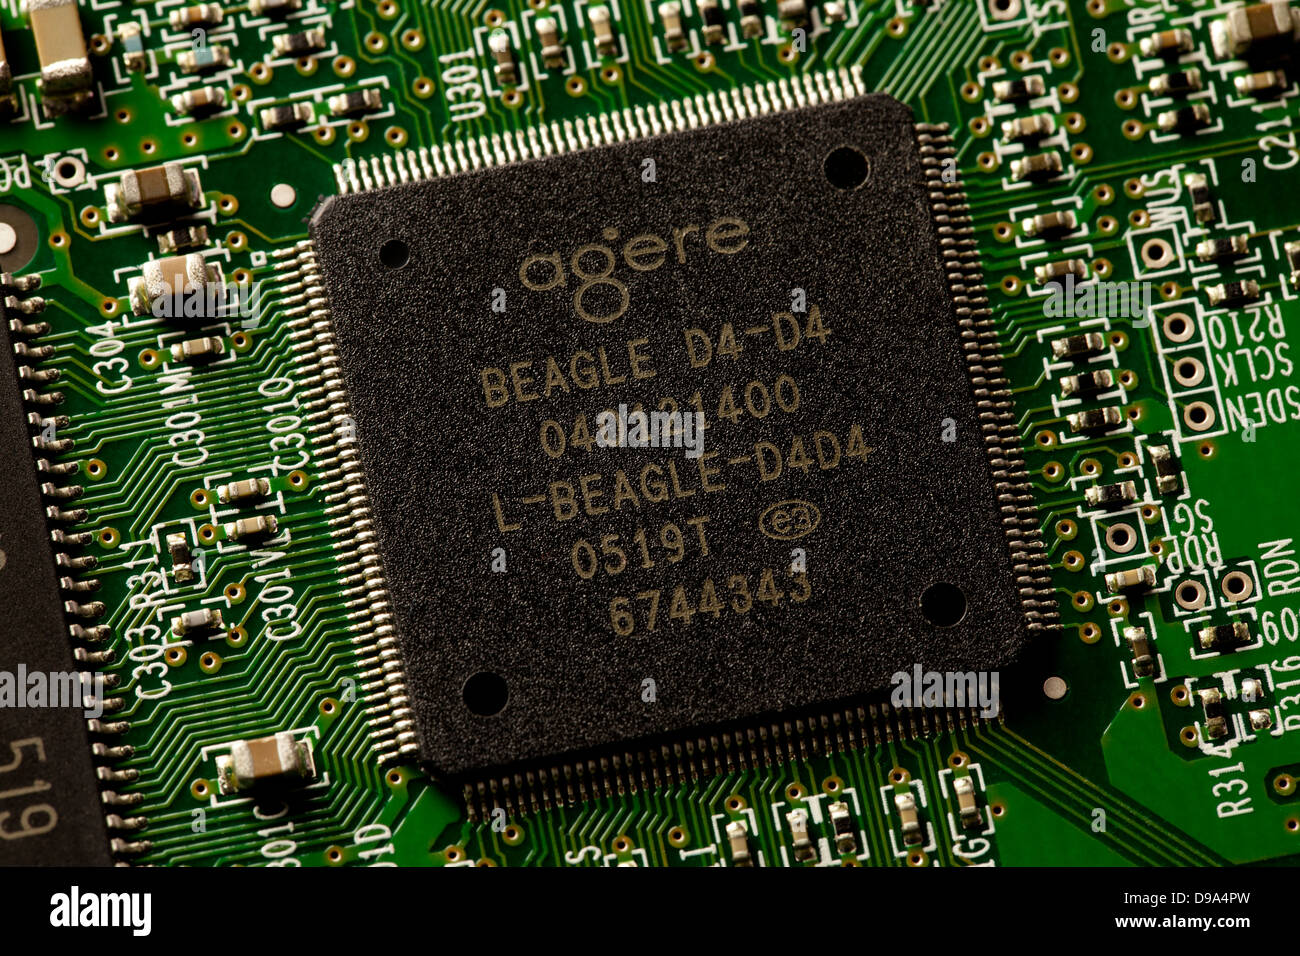 AGERE L-BEAGLE-D4D4-DB 19 bit della CPU su scheda di circuito Foto Stock